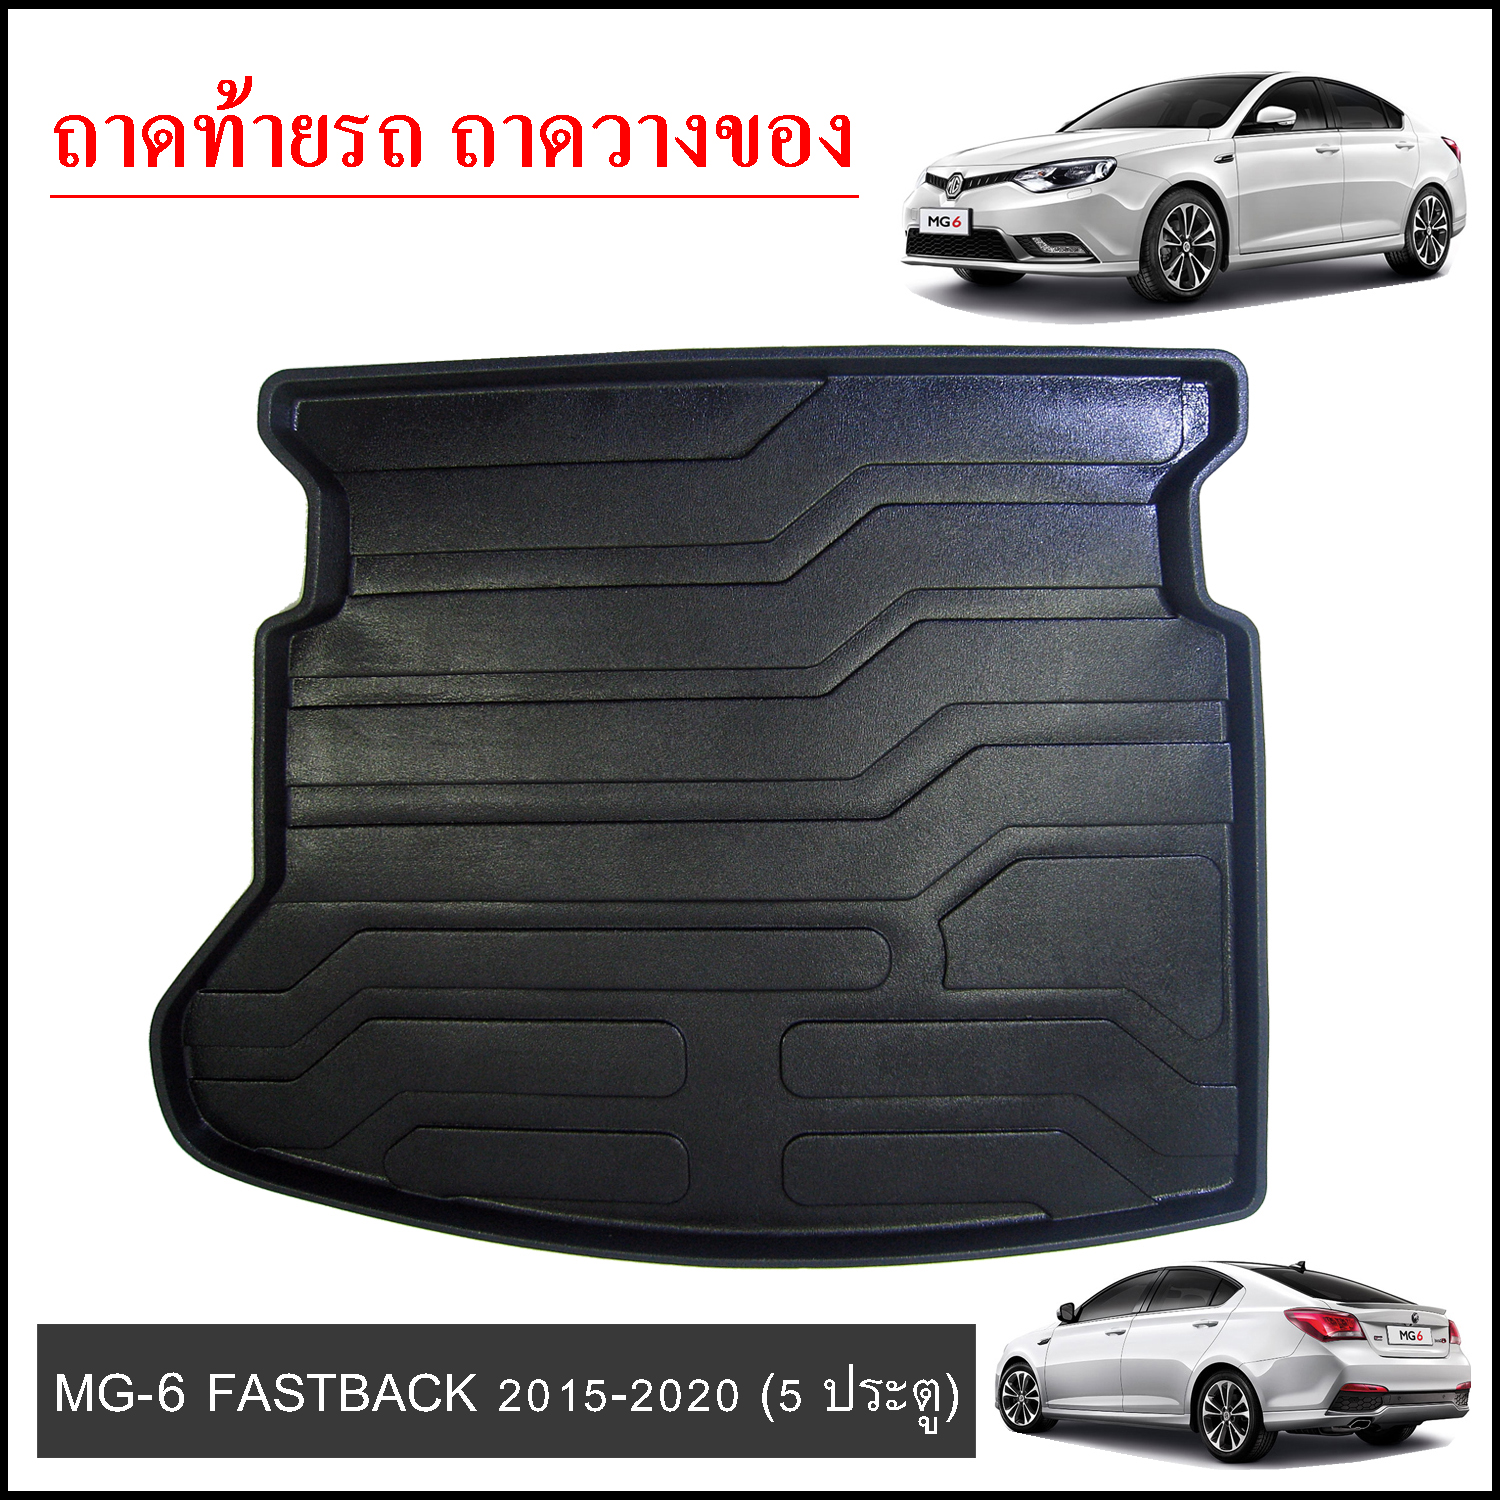 MG6 Fastback 2015-2020